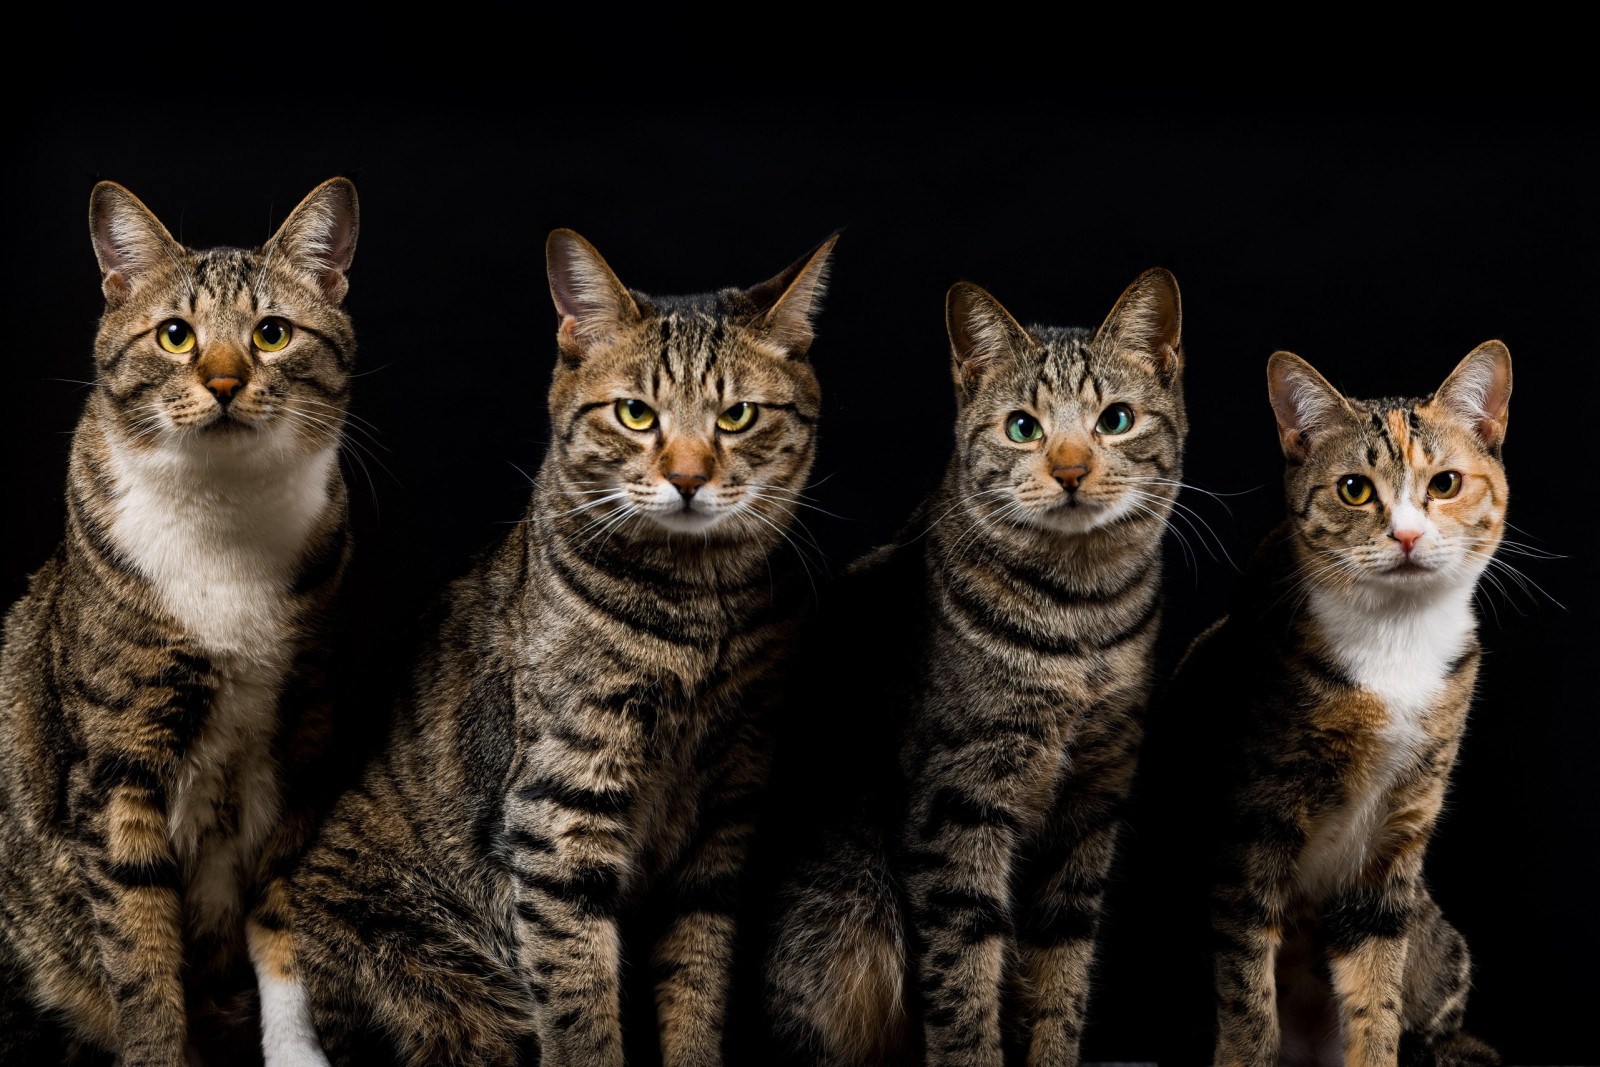 מכירת חתולים מגזע אירופאי בישראל בלוח המודעות